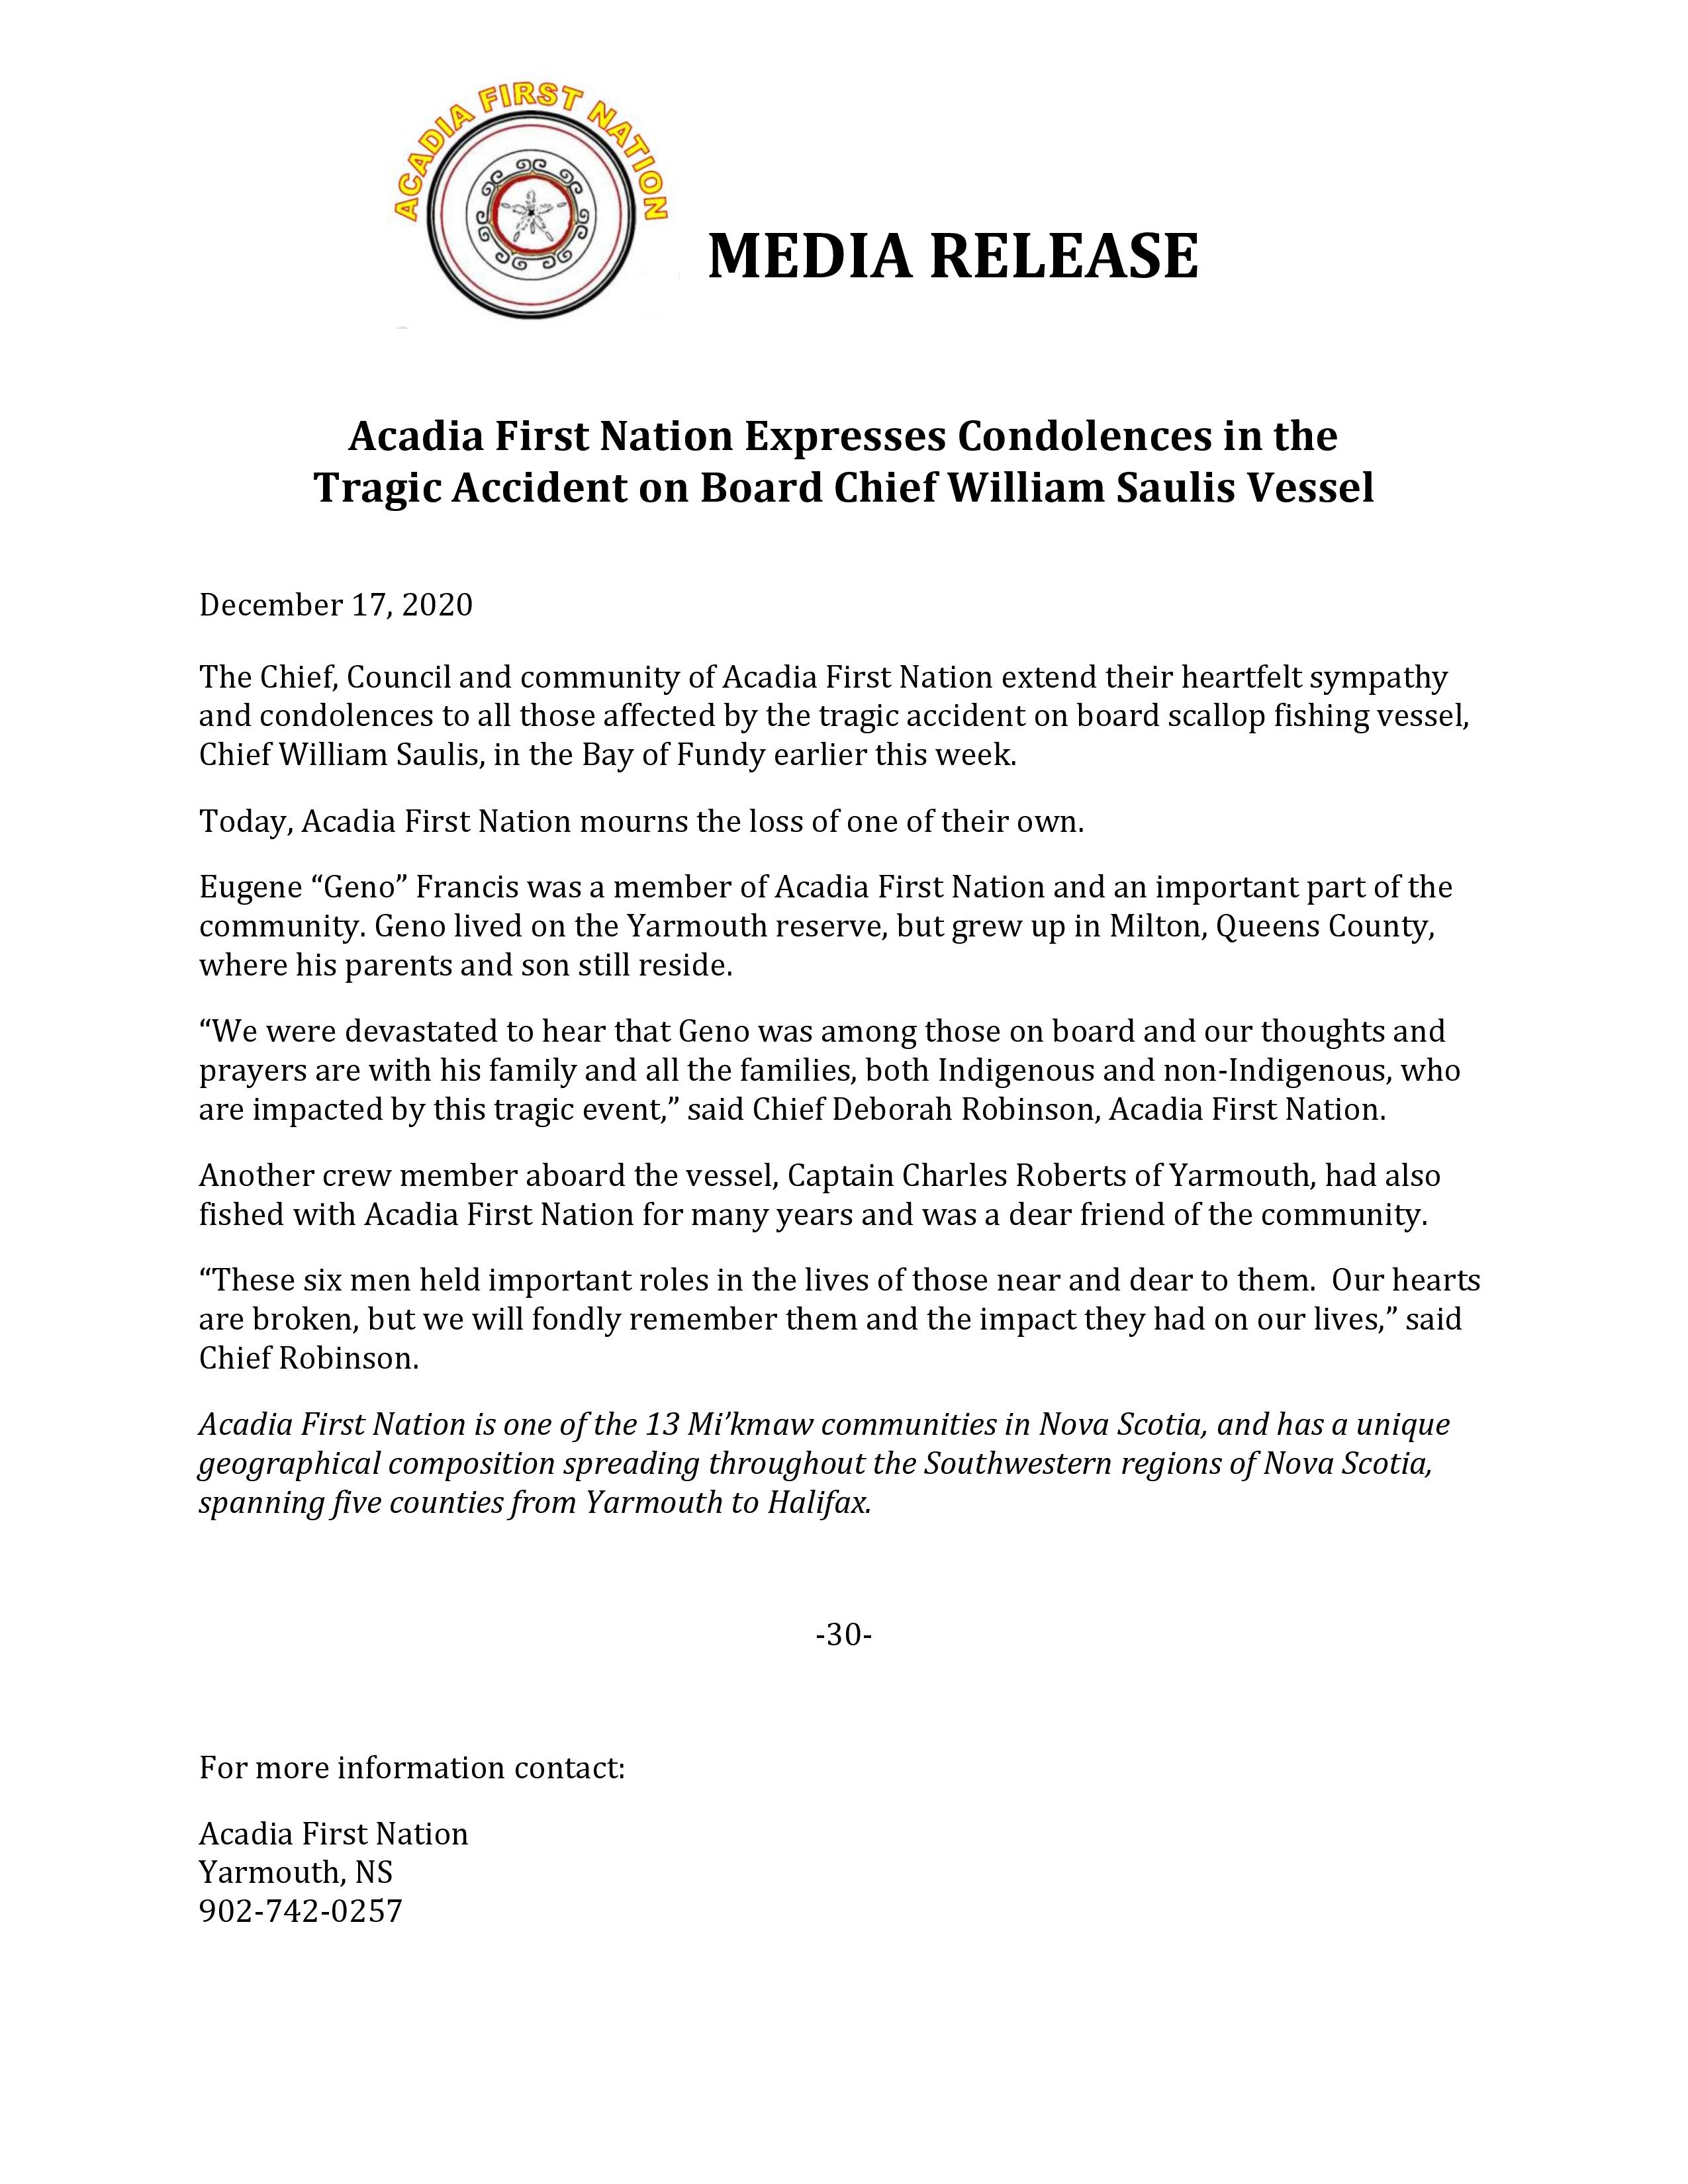 Media Release Acadia First Nation Expresses Condolences 17 Dec 2020